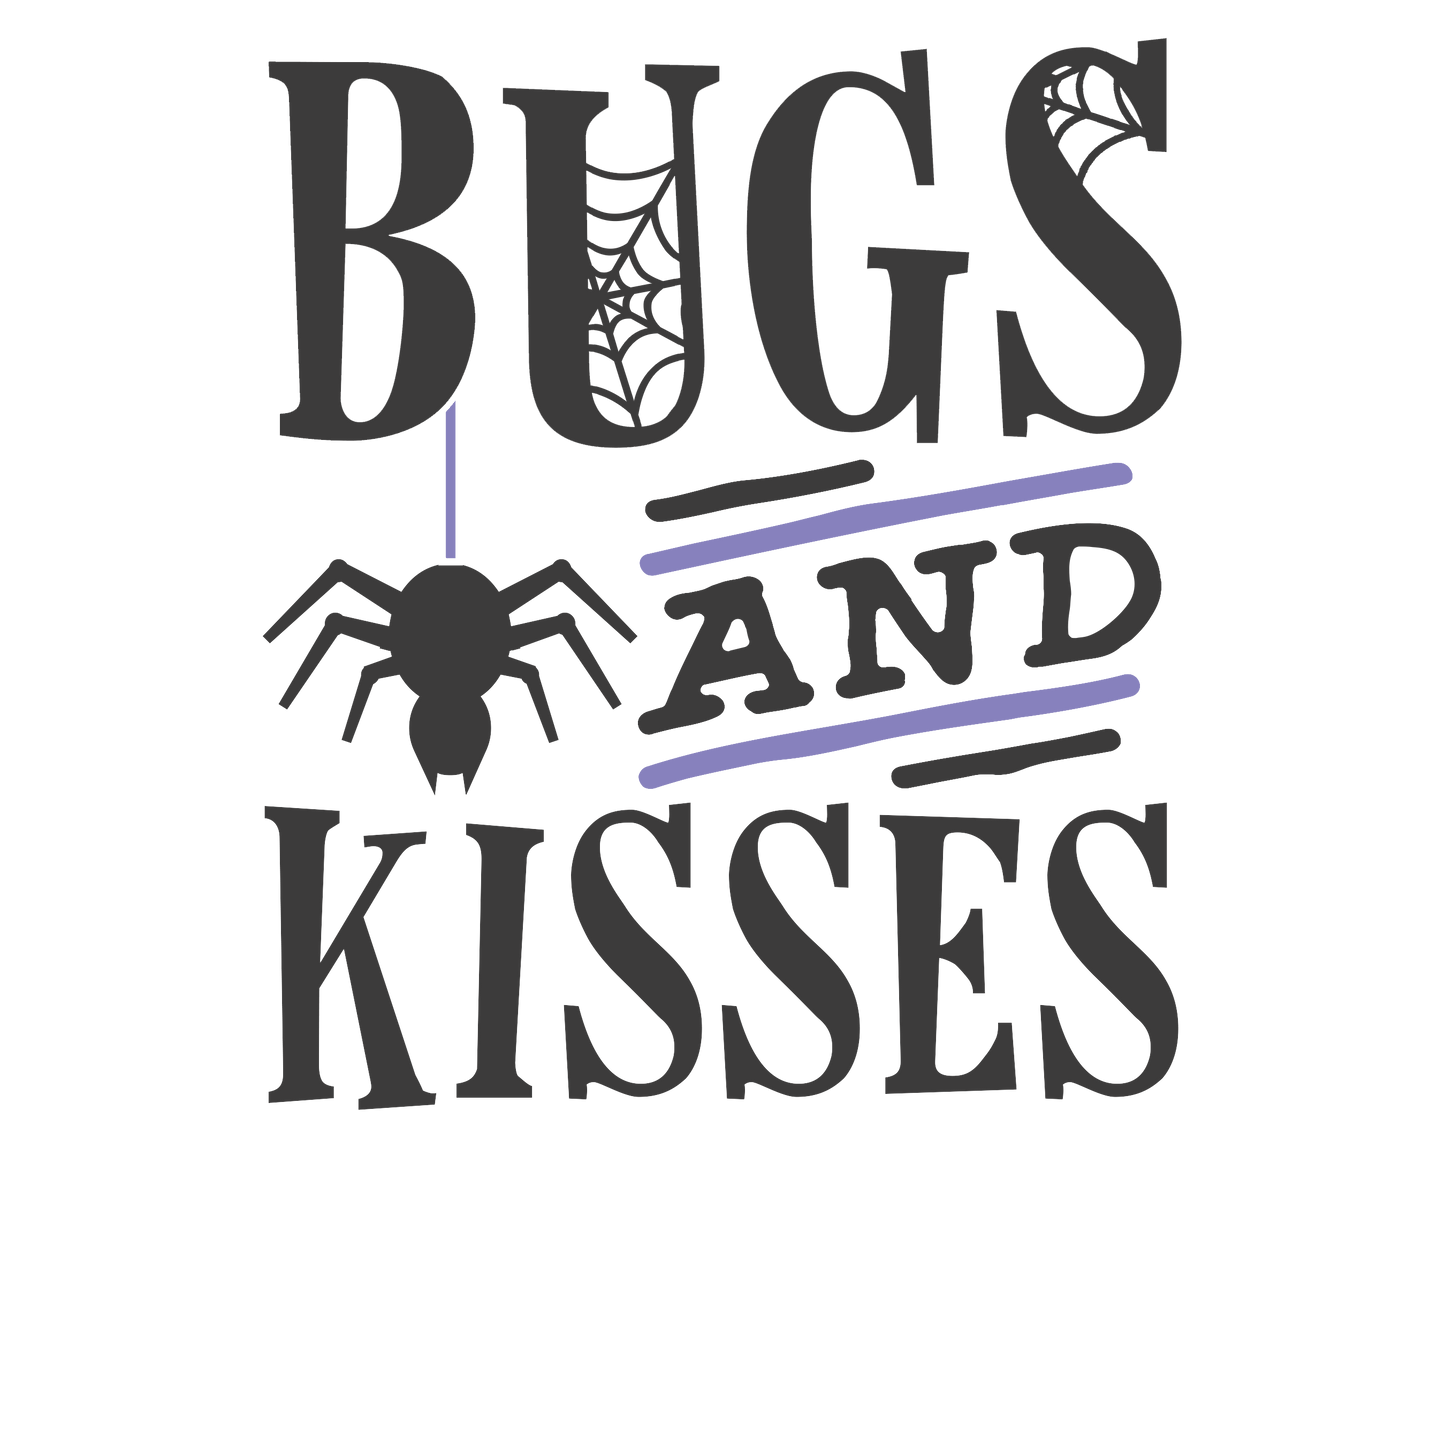 Bugs and Kisses - Mini